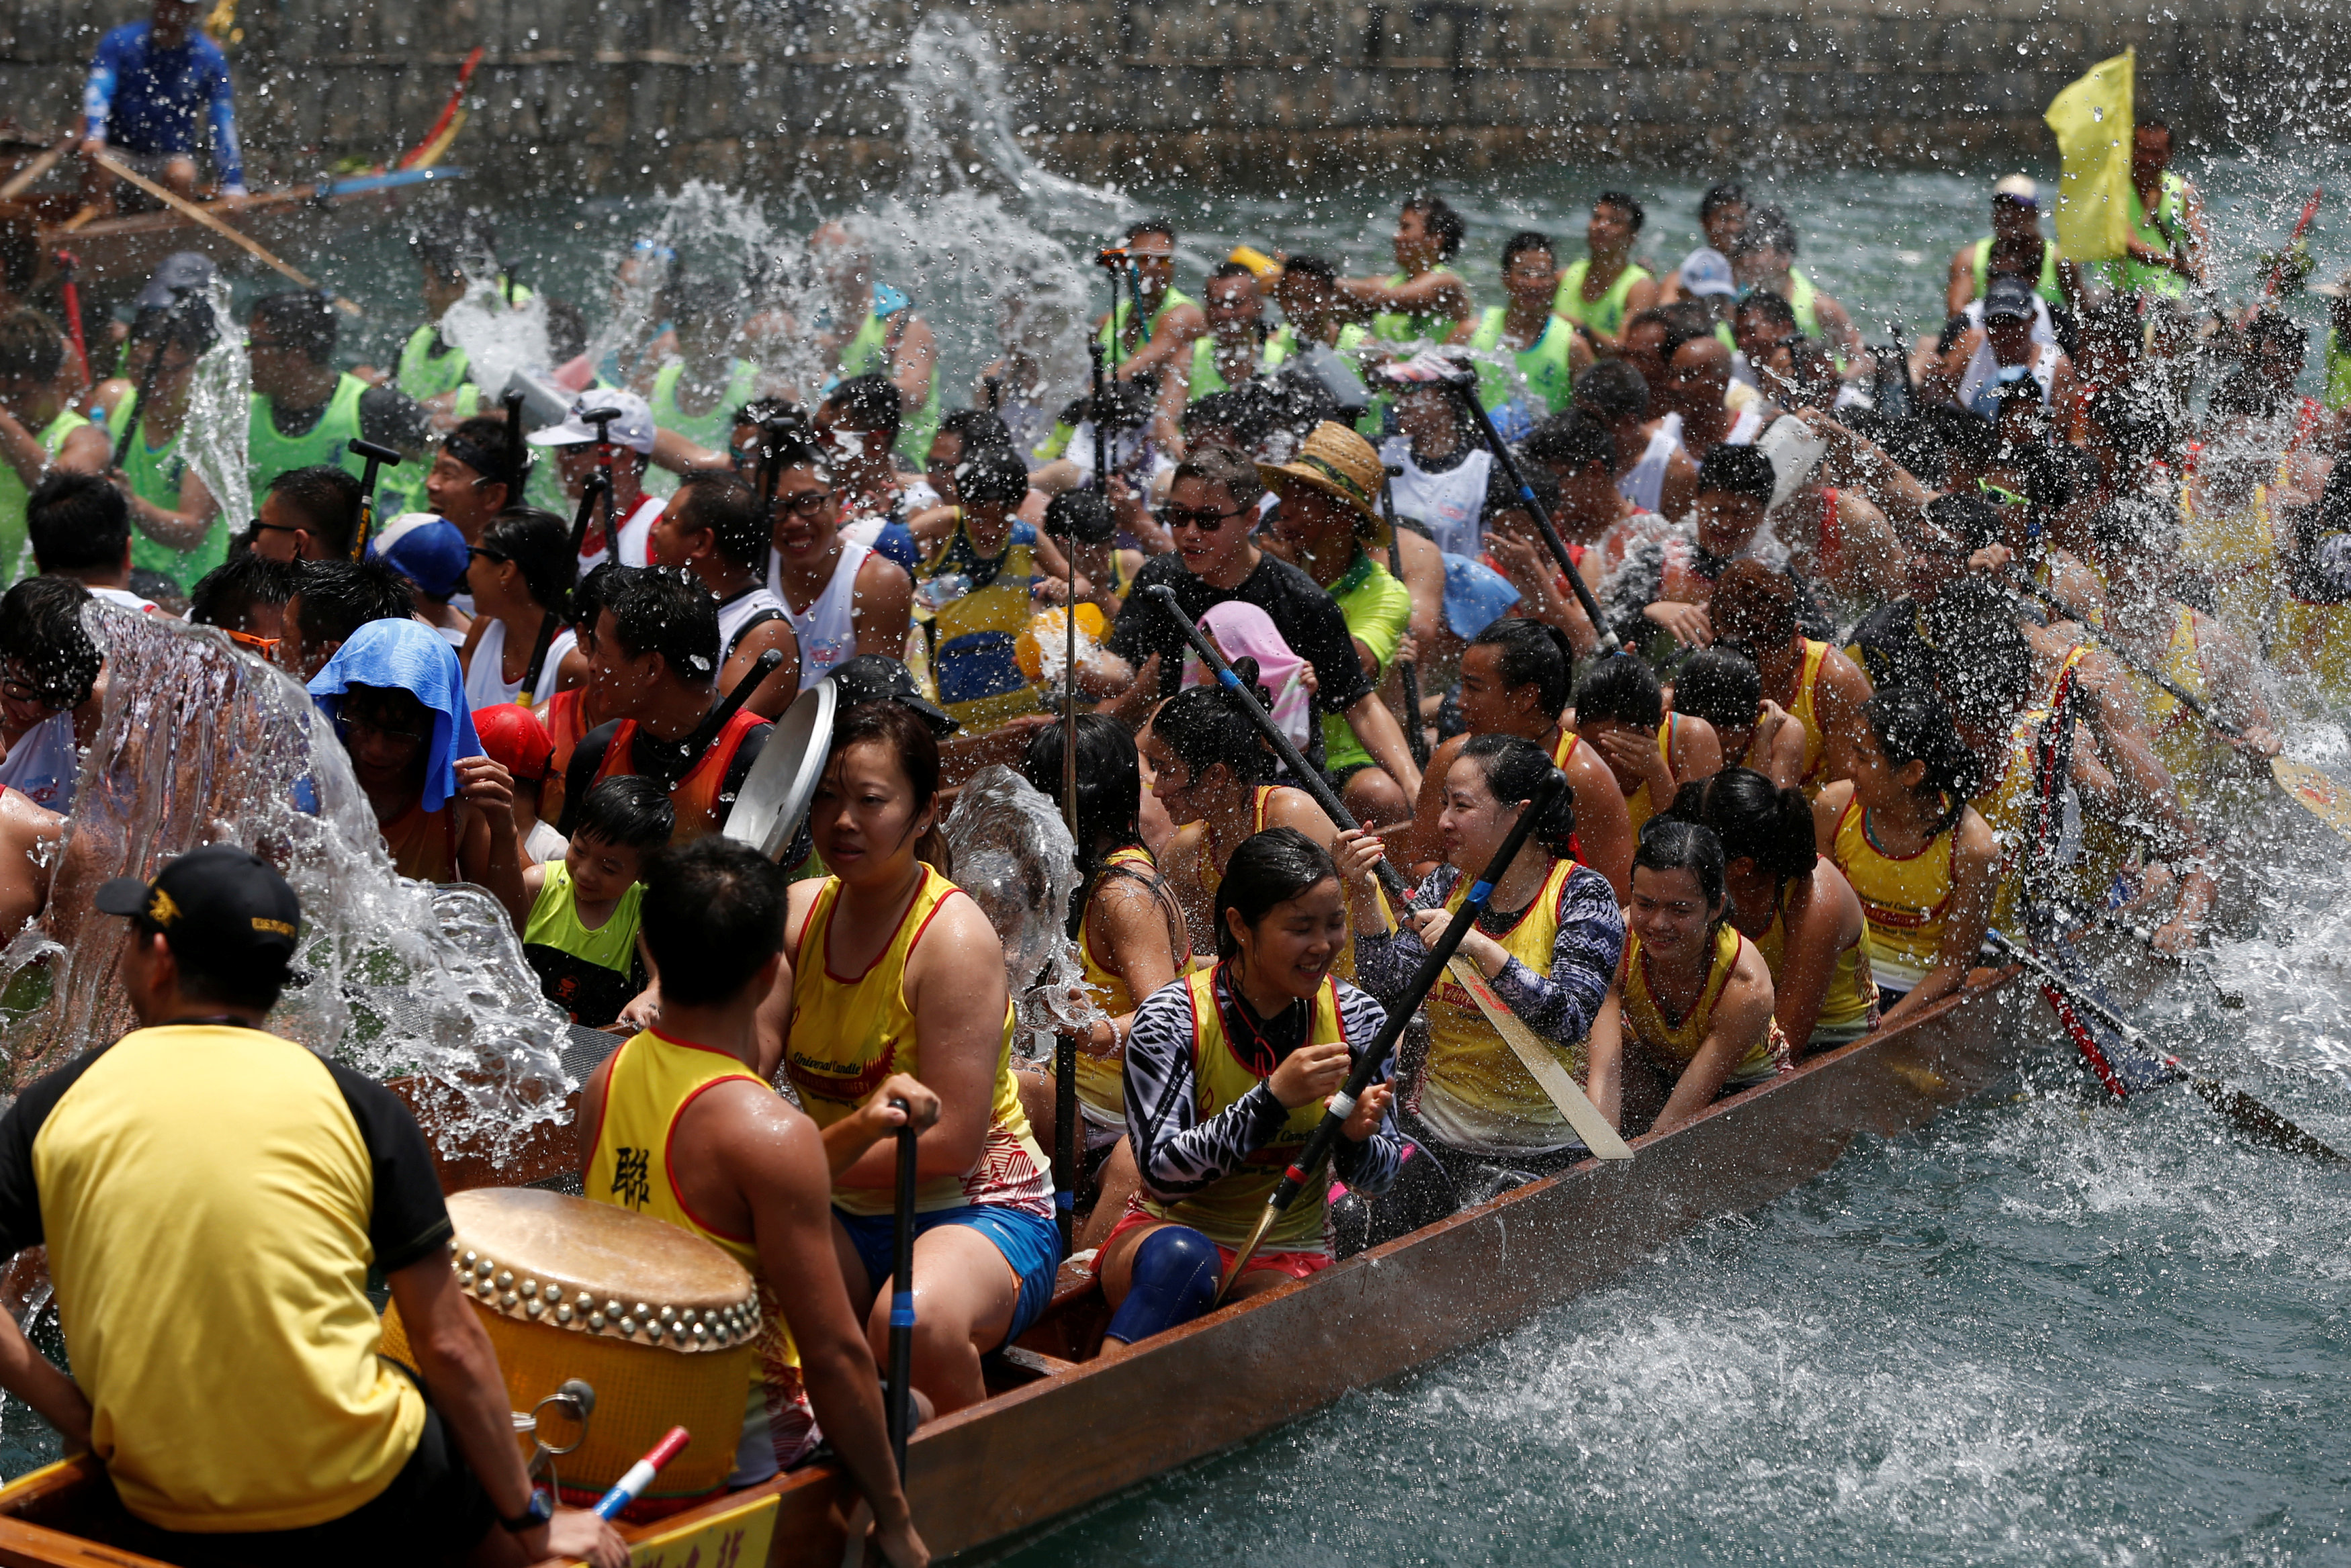 المشاركون فى رش المياه خلال حفل مهرجان قوارب التنين